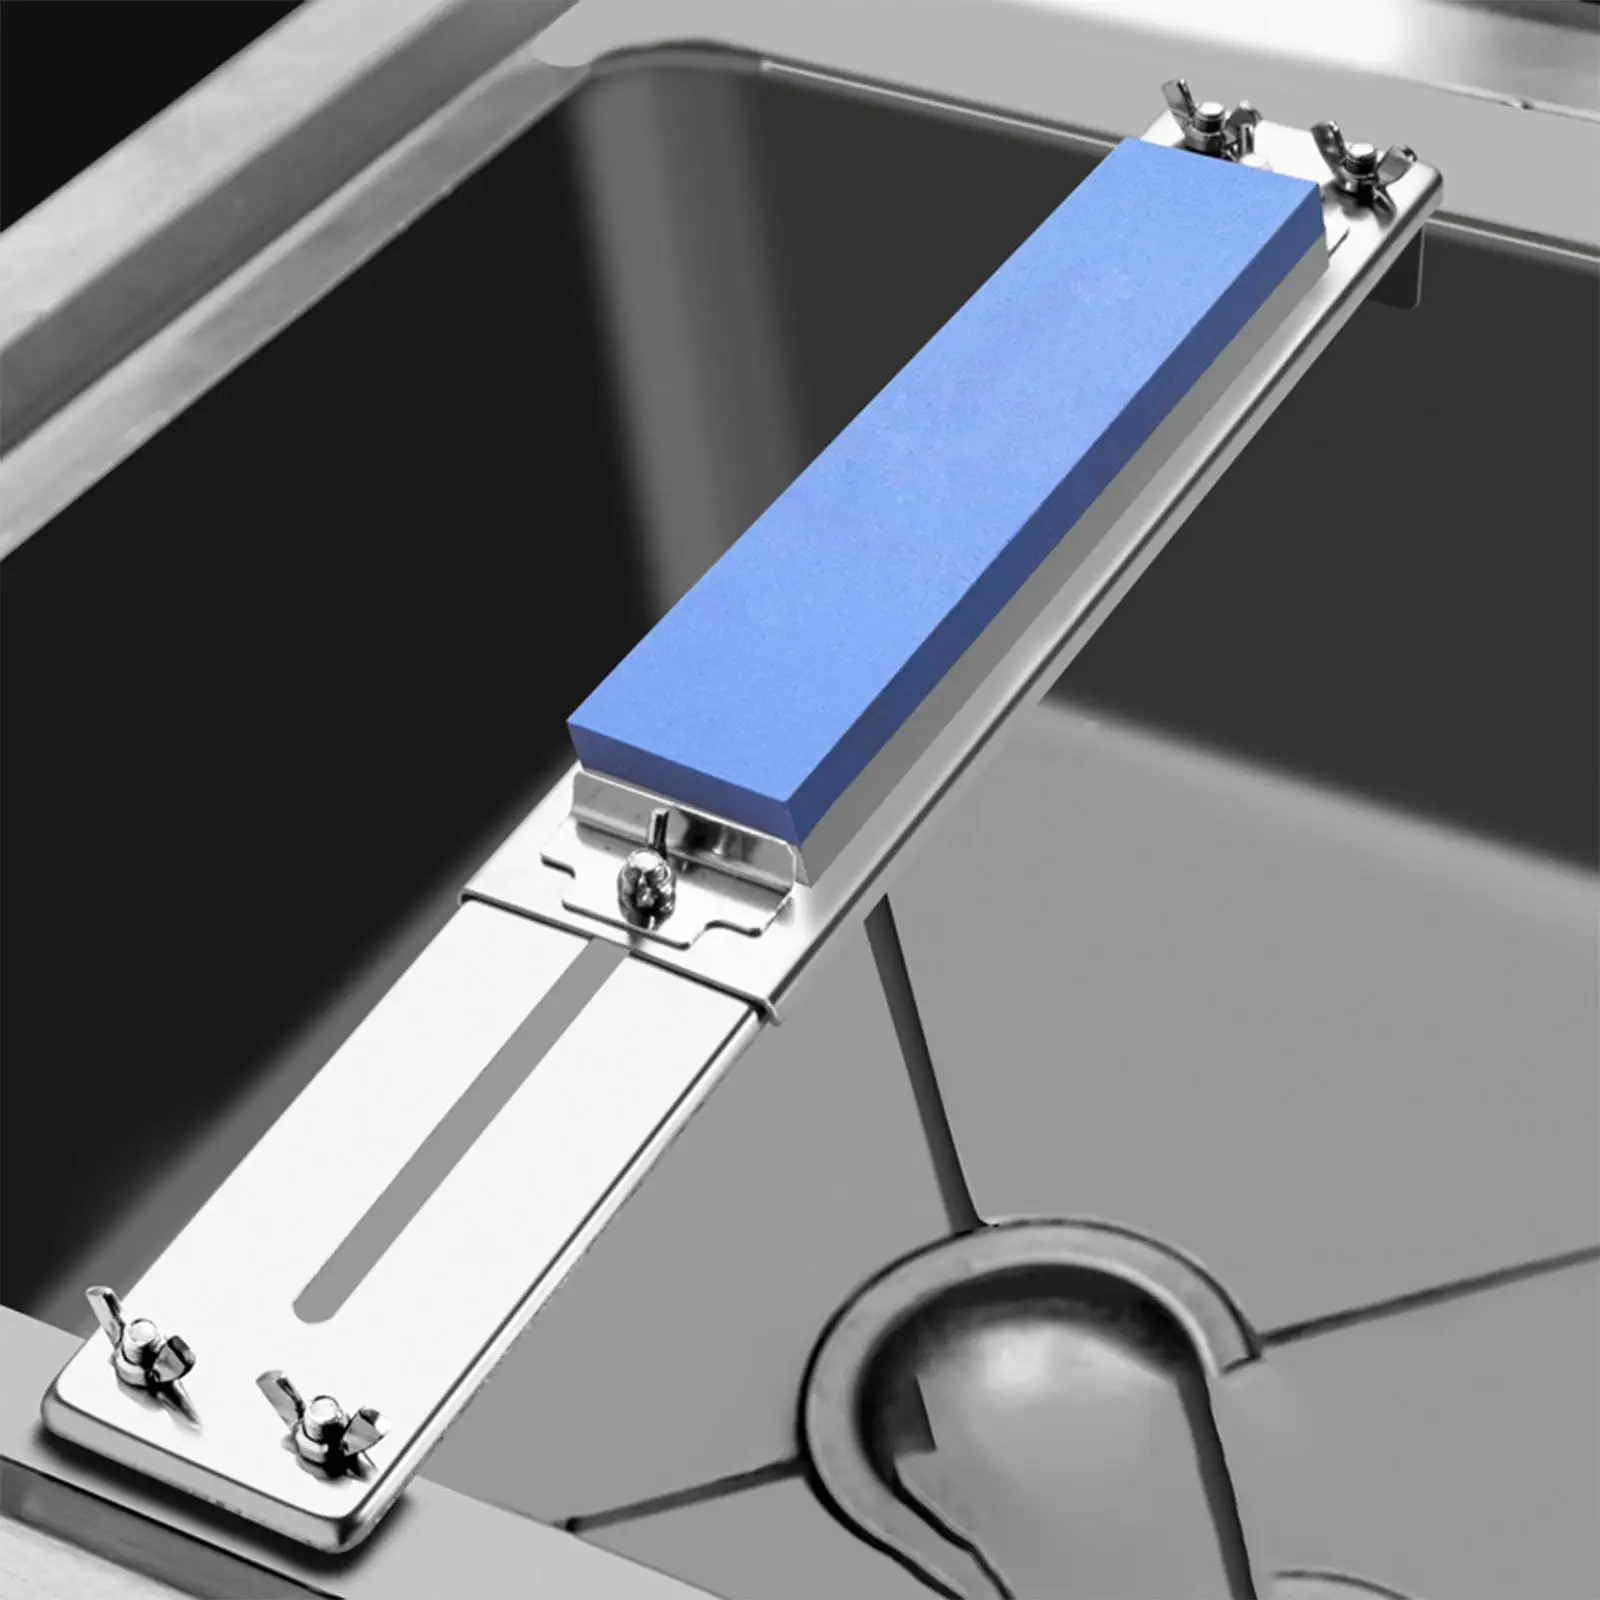 Stainless Steel Sharpener Stone Holder Adjustable Over Sink Sink Bridge Holder Whetstone Holder for Whetstone Sharpener